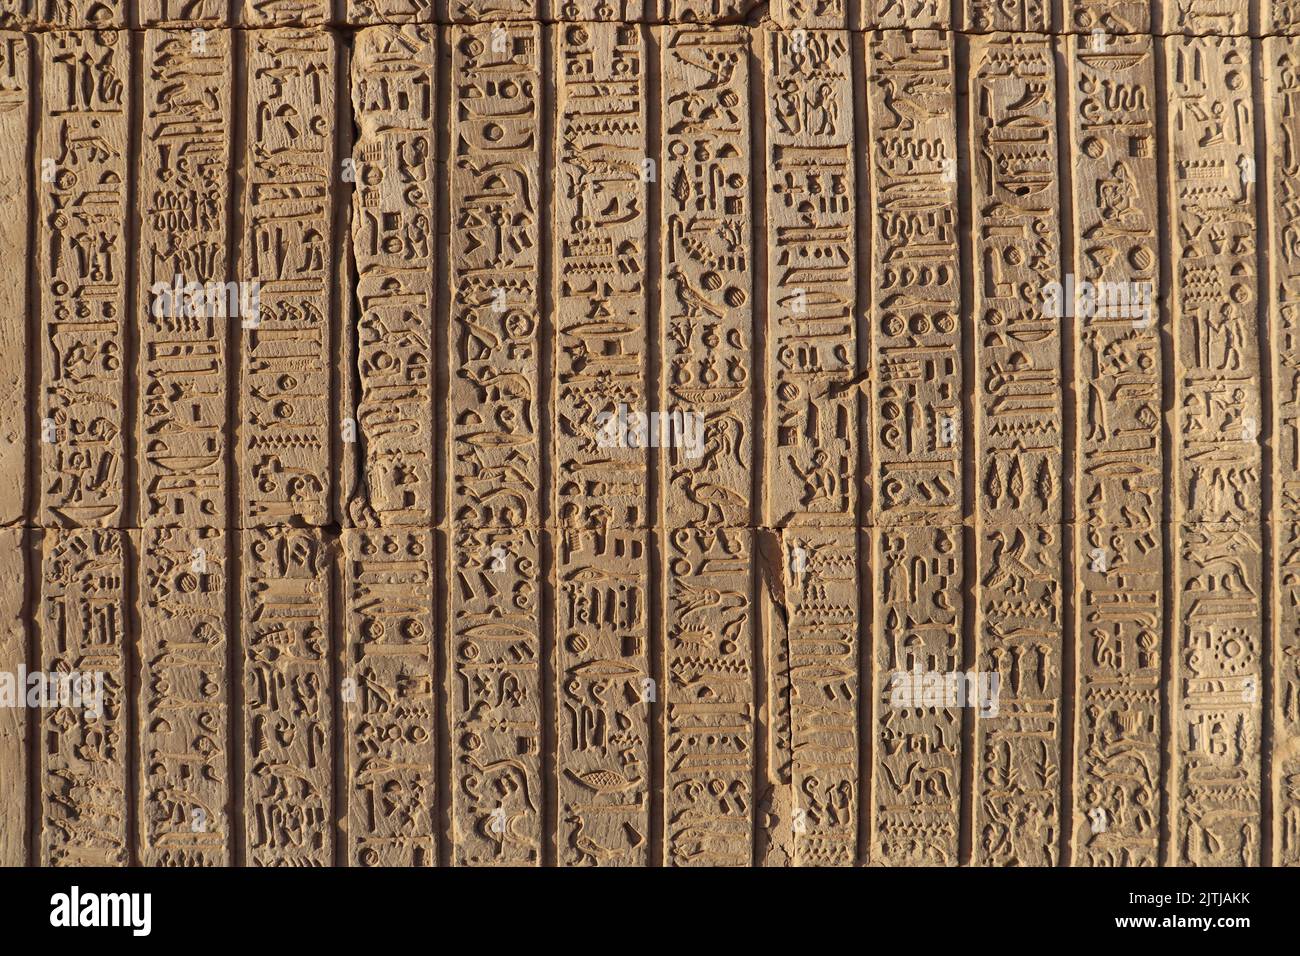 Hiéroglyphes pharaoniques anciens sculptés sur les murs du temple Kom Ombo à Assouan, en Égypte Banque D'Images